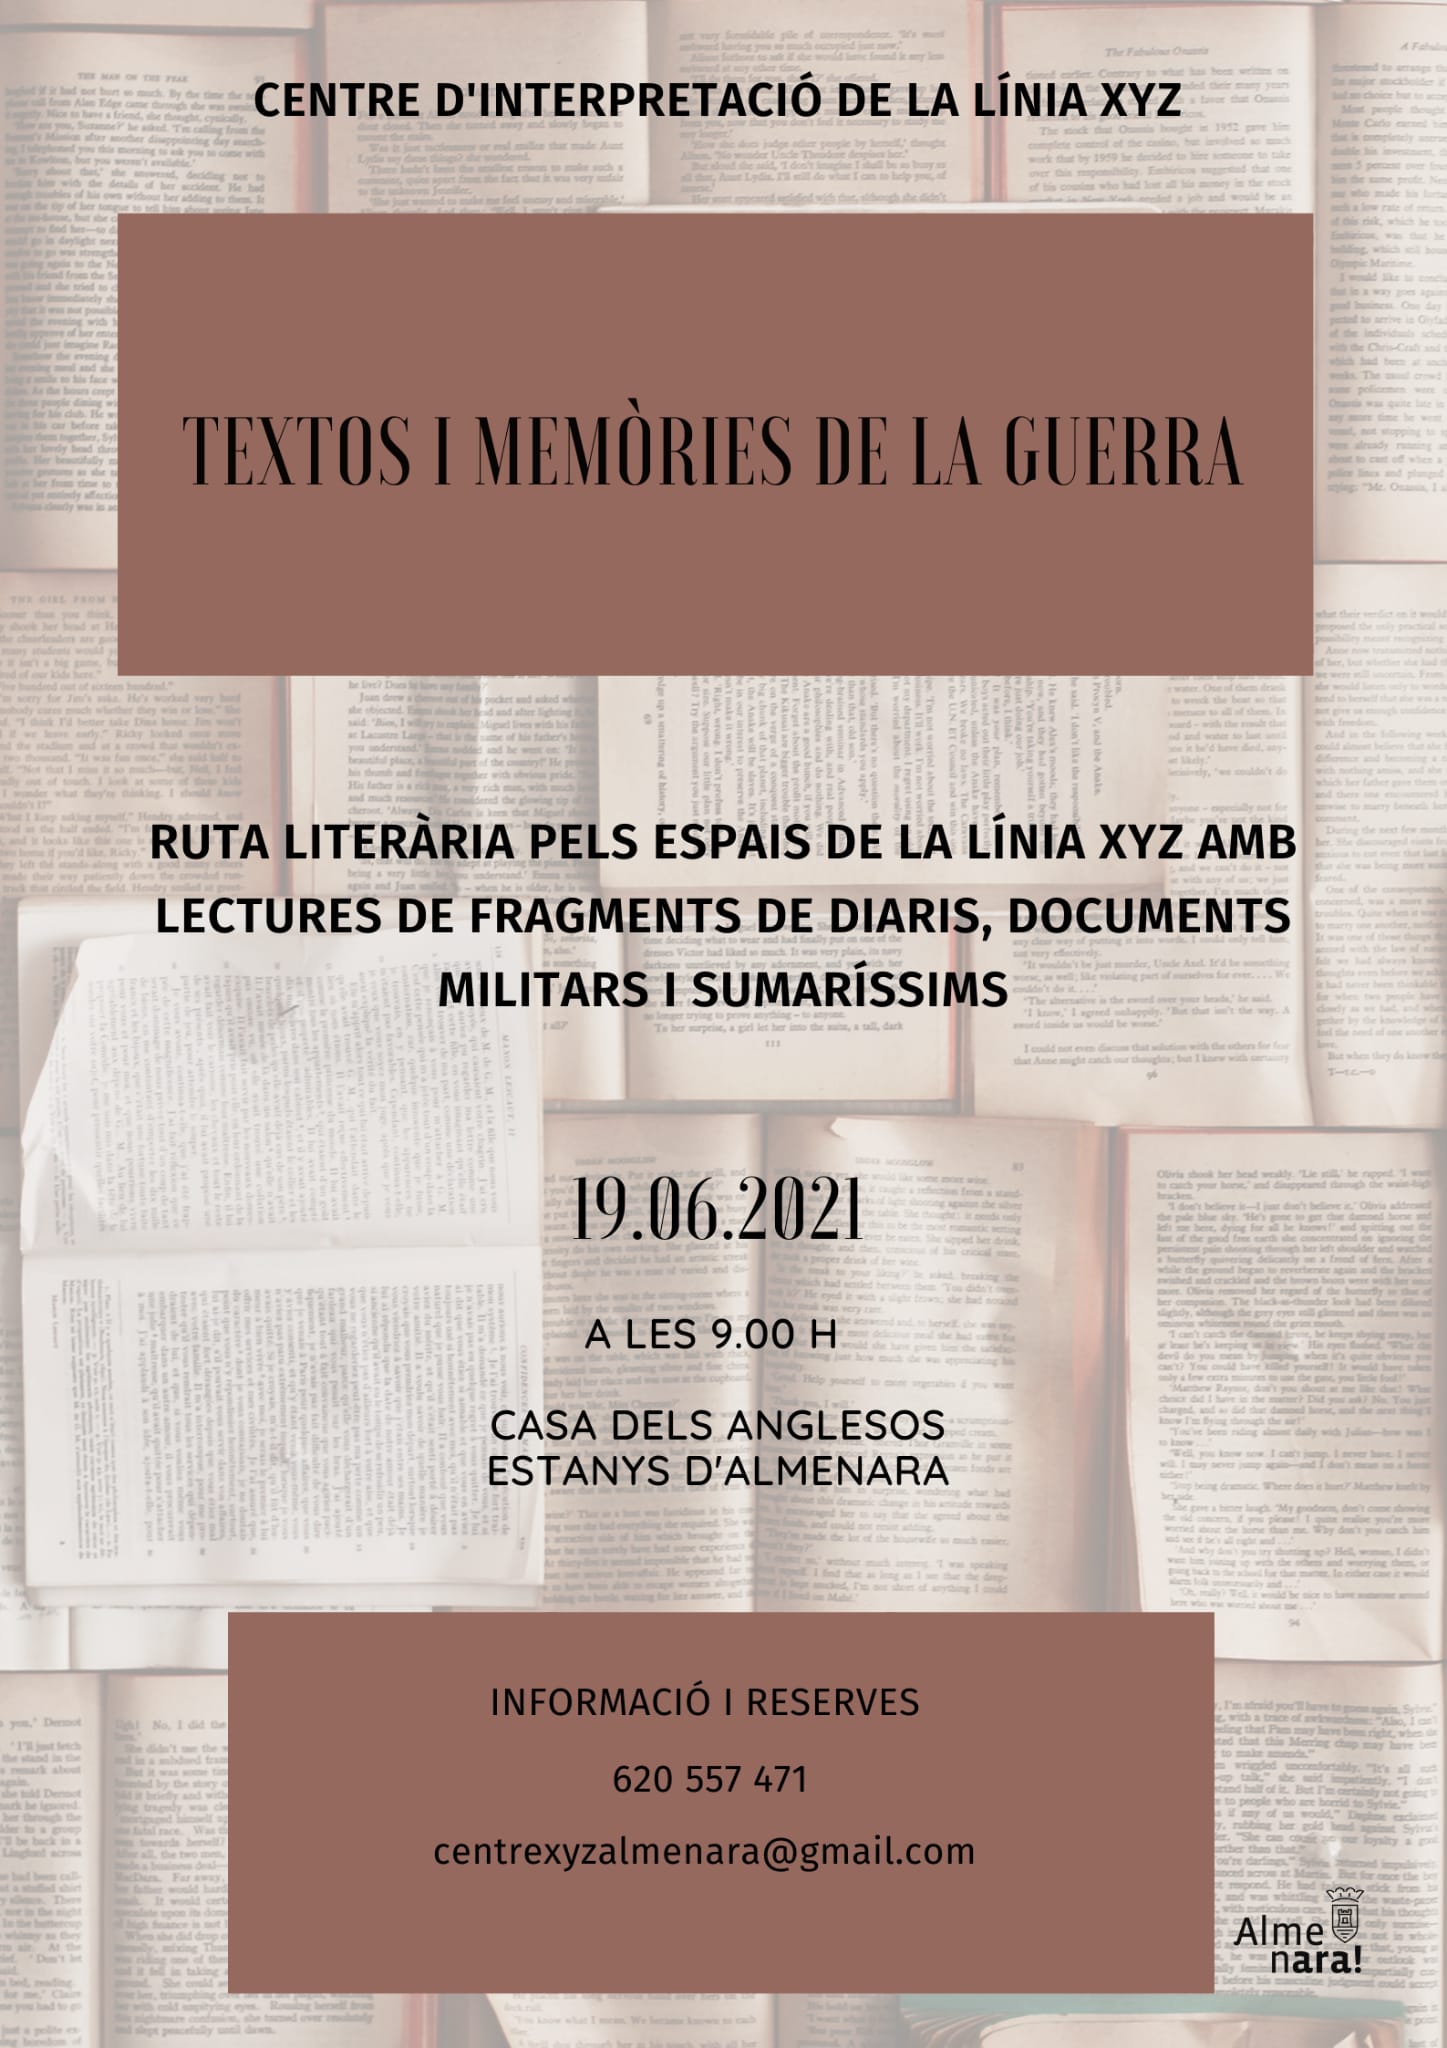 El Centre d’Interpretació de la Línia XYZ de Almenara programa el sábado 19 de junio una ruta con la lectura de textos y memoria sobre la guerra